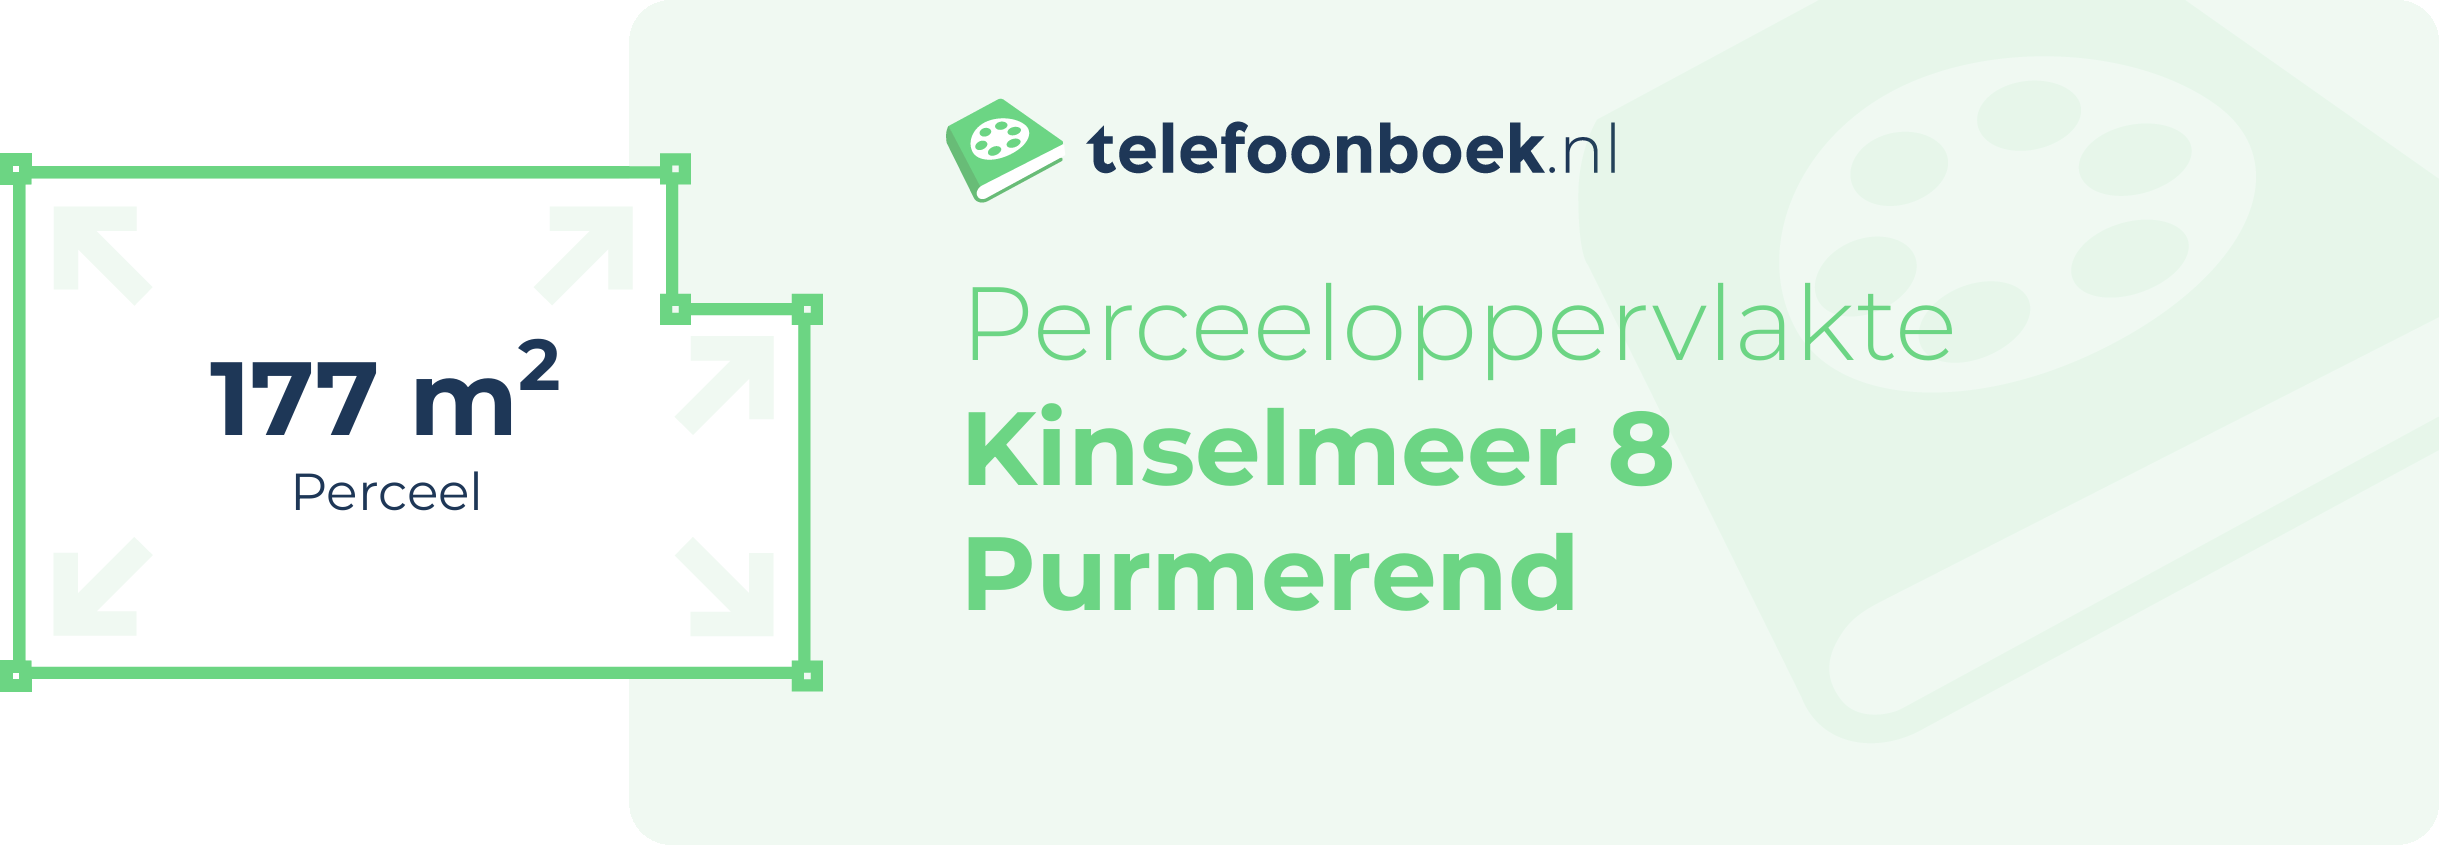 Perceeloppervlakte Kinselmeer 8 Purmerend